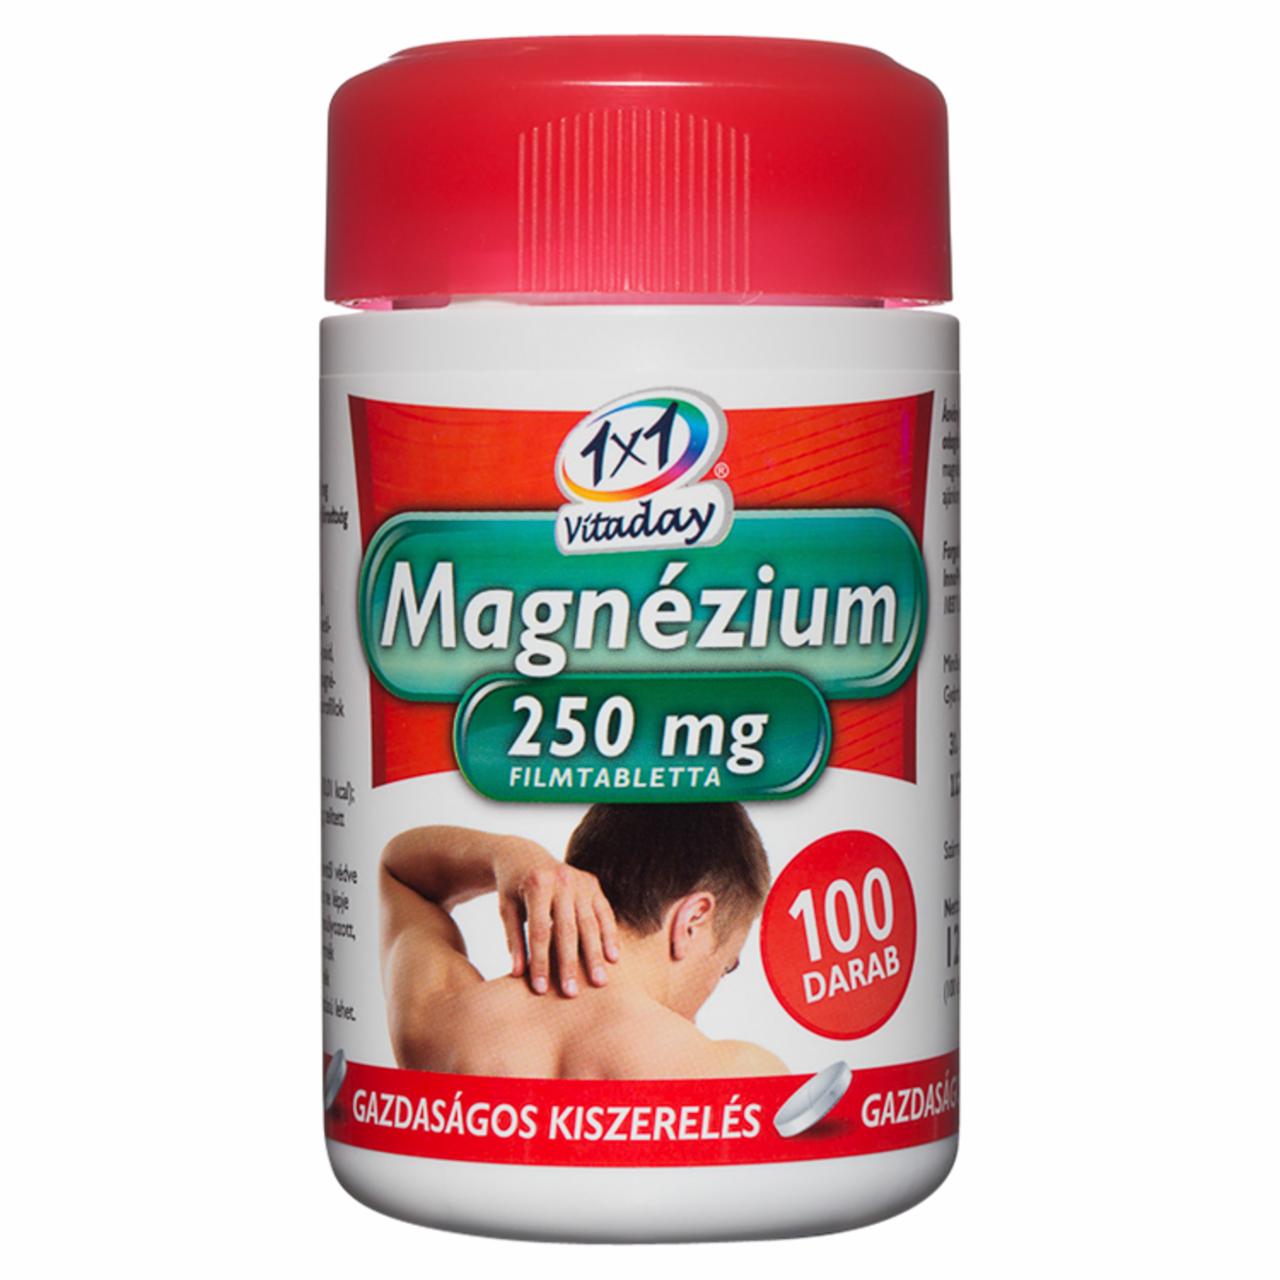 Képek - 1x1 Vitaday Magnézium 250 mg étrend-kiegészítő filmtabletta 100 db 120 g